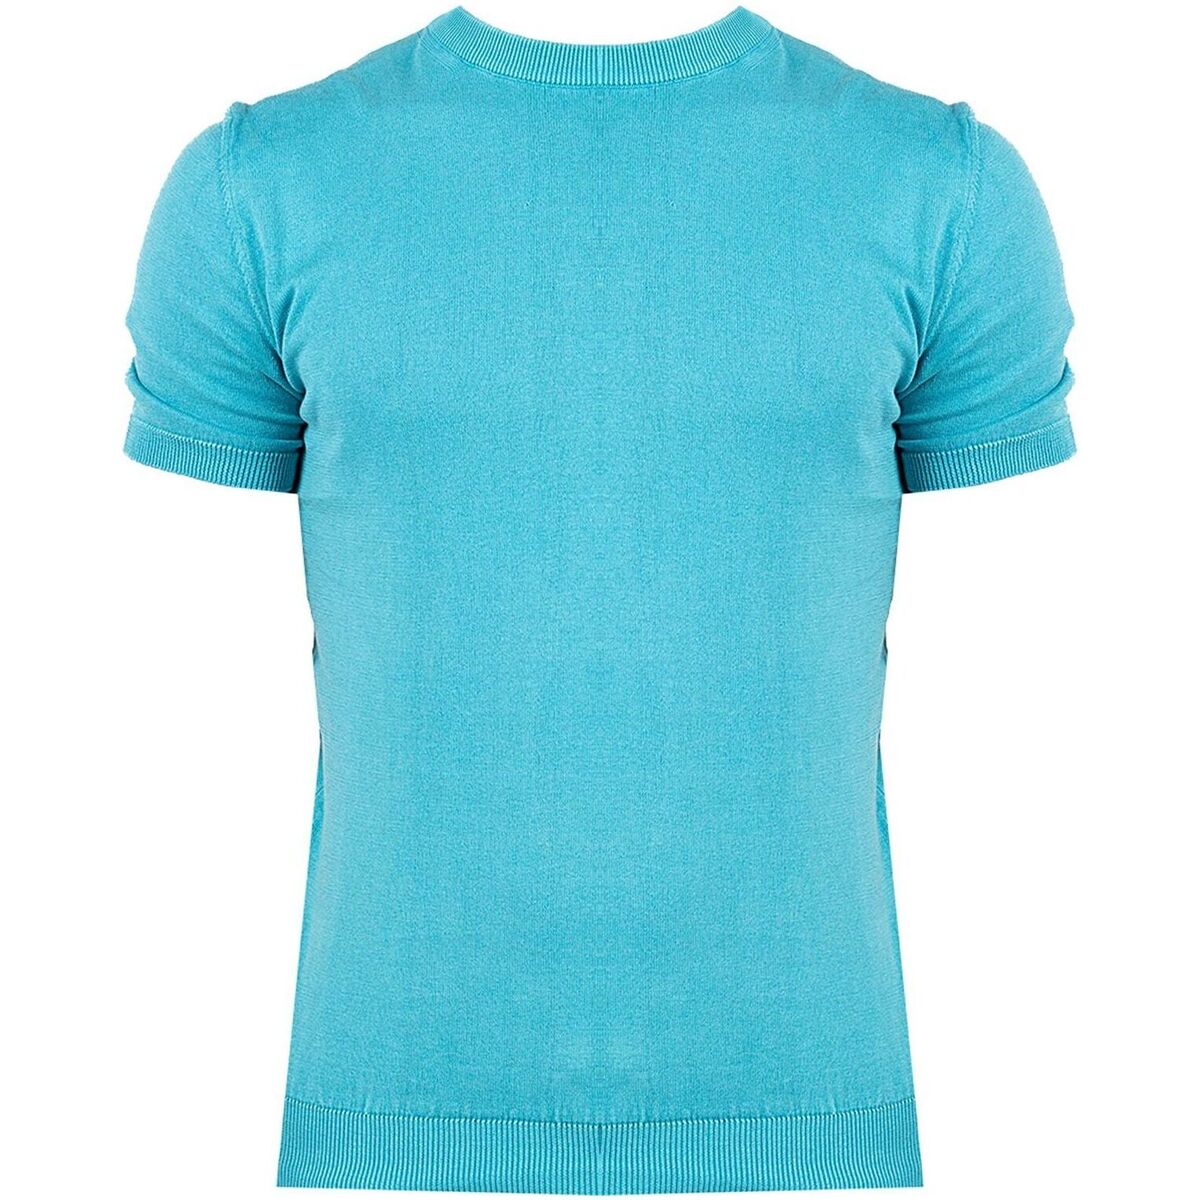 vaatteet Miehet Lyhythihainen t-paita Xagon Man P23 081K 1200K Sininen